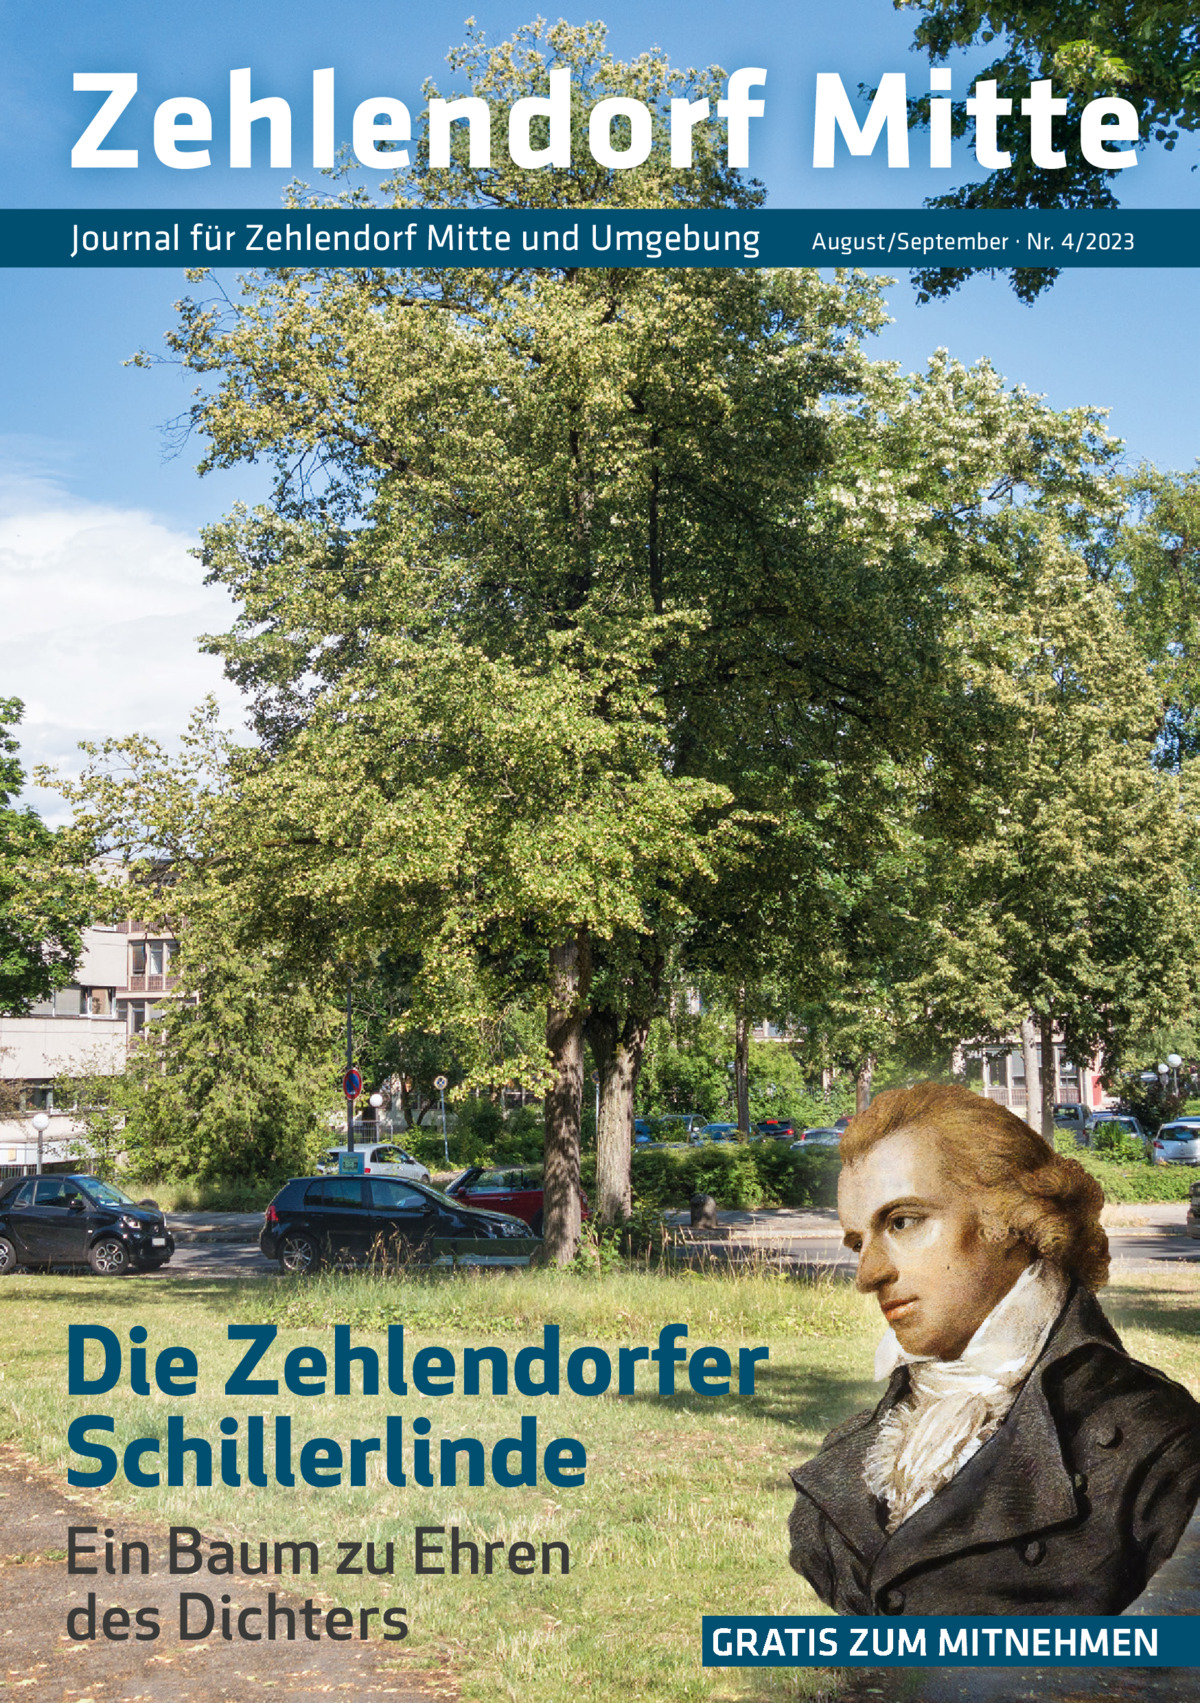 Zehlendorf Mitte Journal für Zehlendorf Mitte und Umgebung  August/September · Nr. 4/2023  Die Zehlendorfer Schillerlinde Ein Baum zu Ehren des Dichters  GRATIS ZUM MITNEHMEN